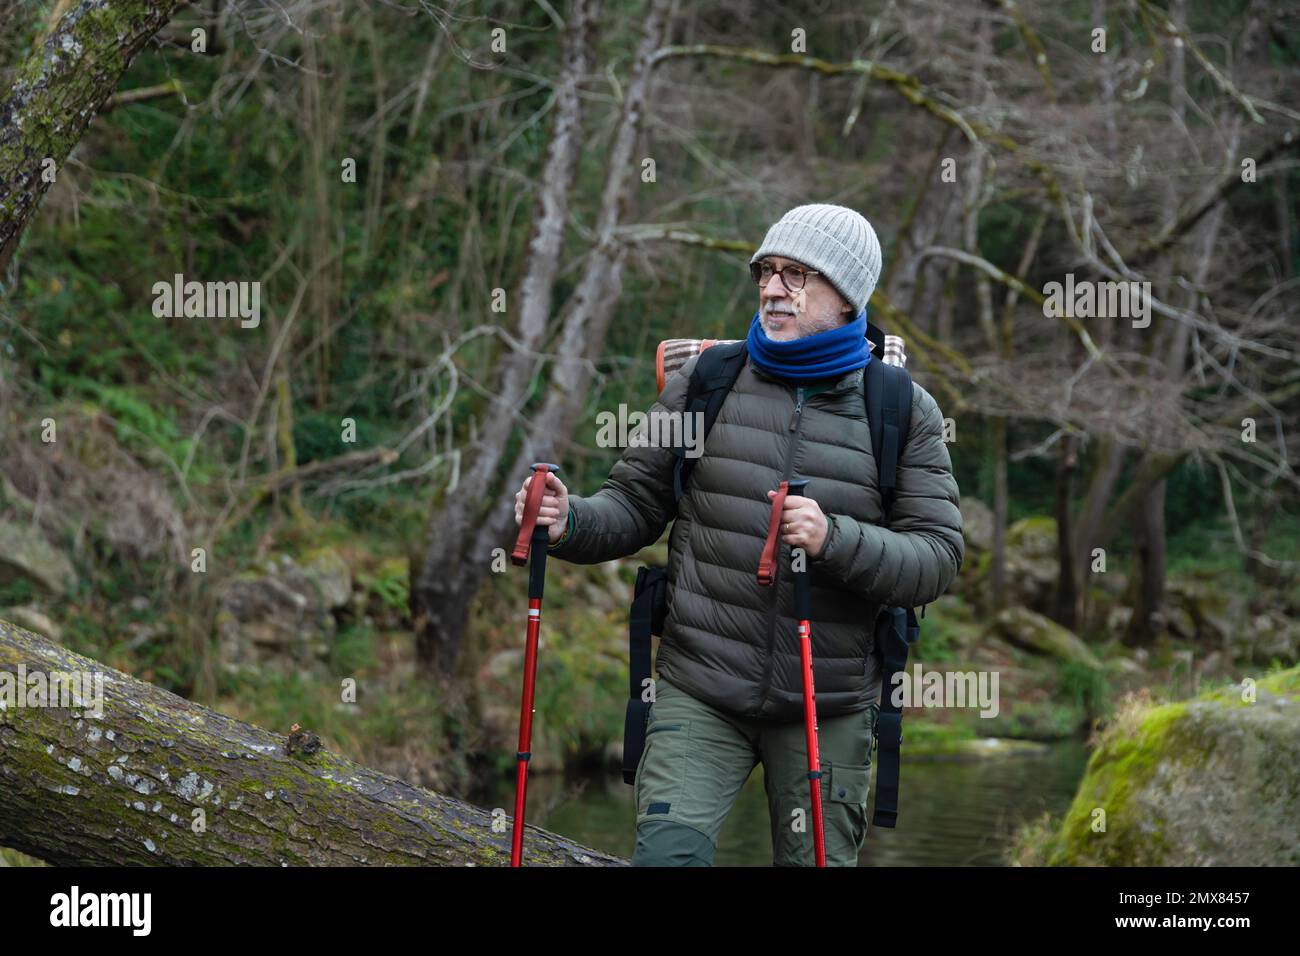 Randonneur positif senior dans des vêtements chauds et chapeau avec sac à dos et bâtons de randonnée pédestre sur le chemin dans la forêt pendant le voyage de randonnée Banque D'Images